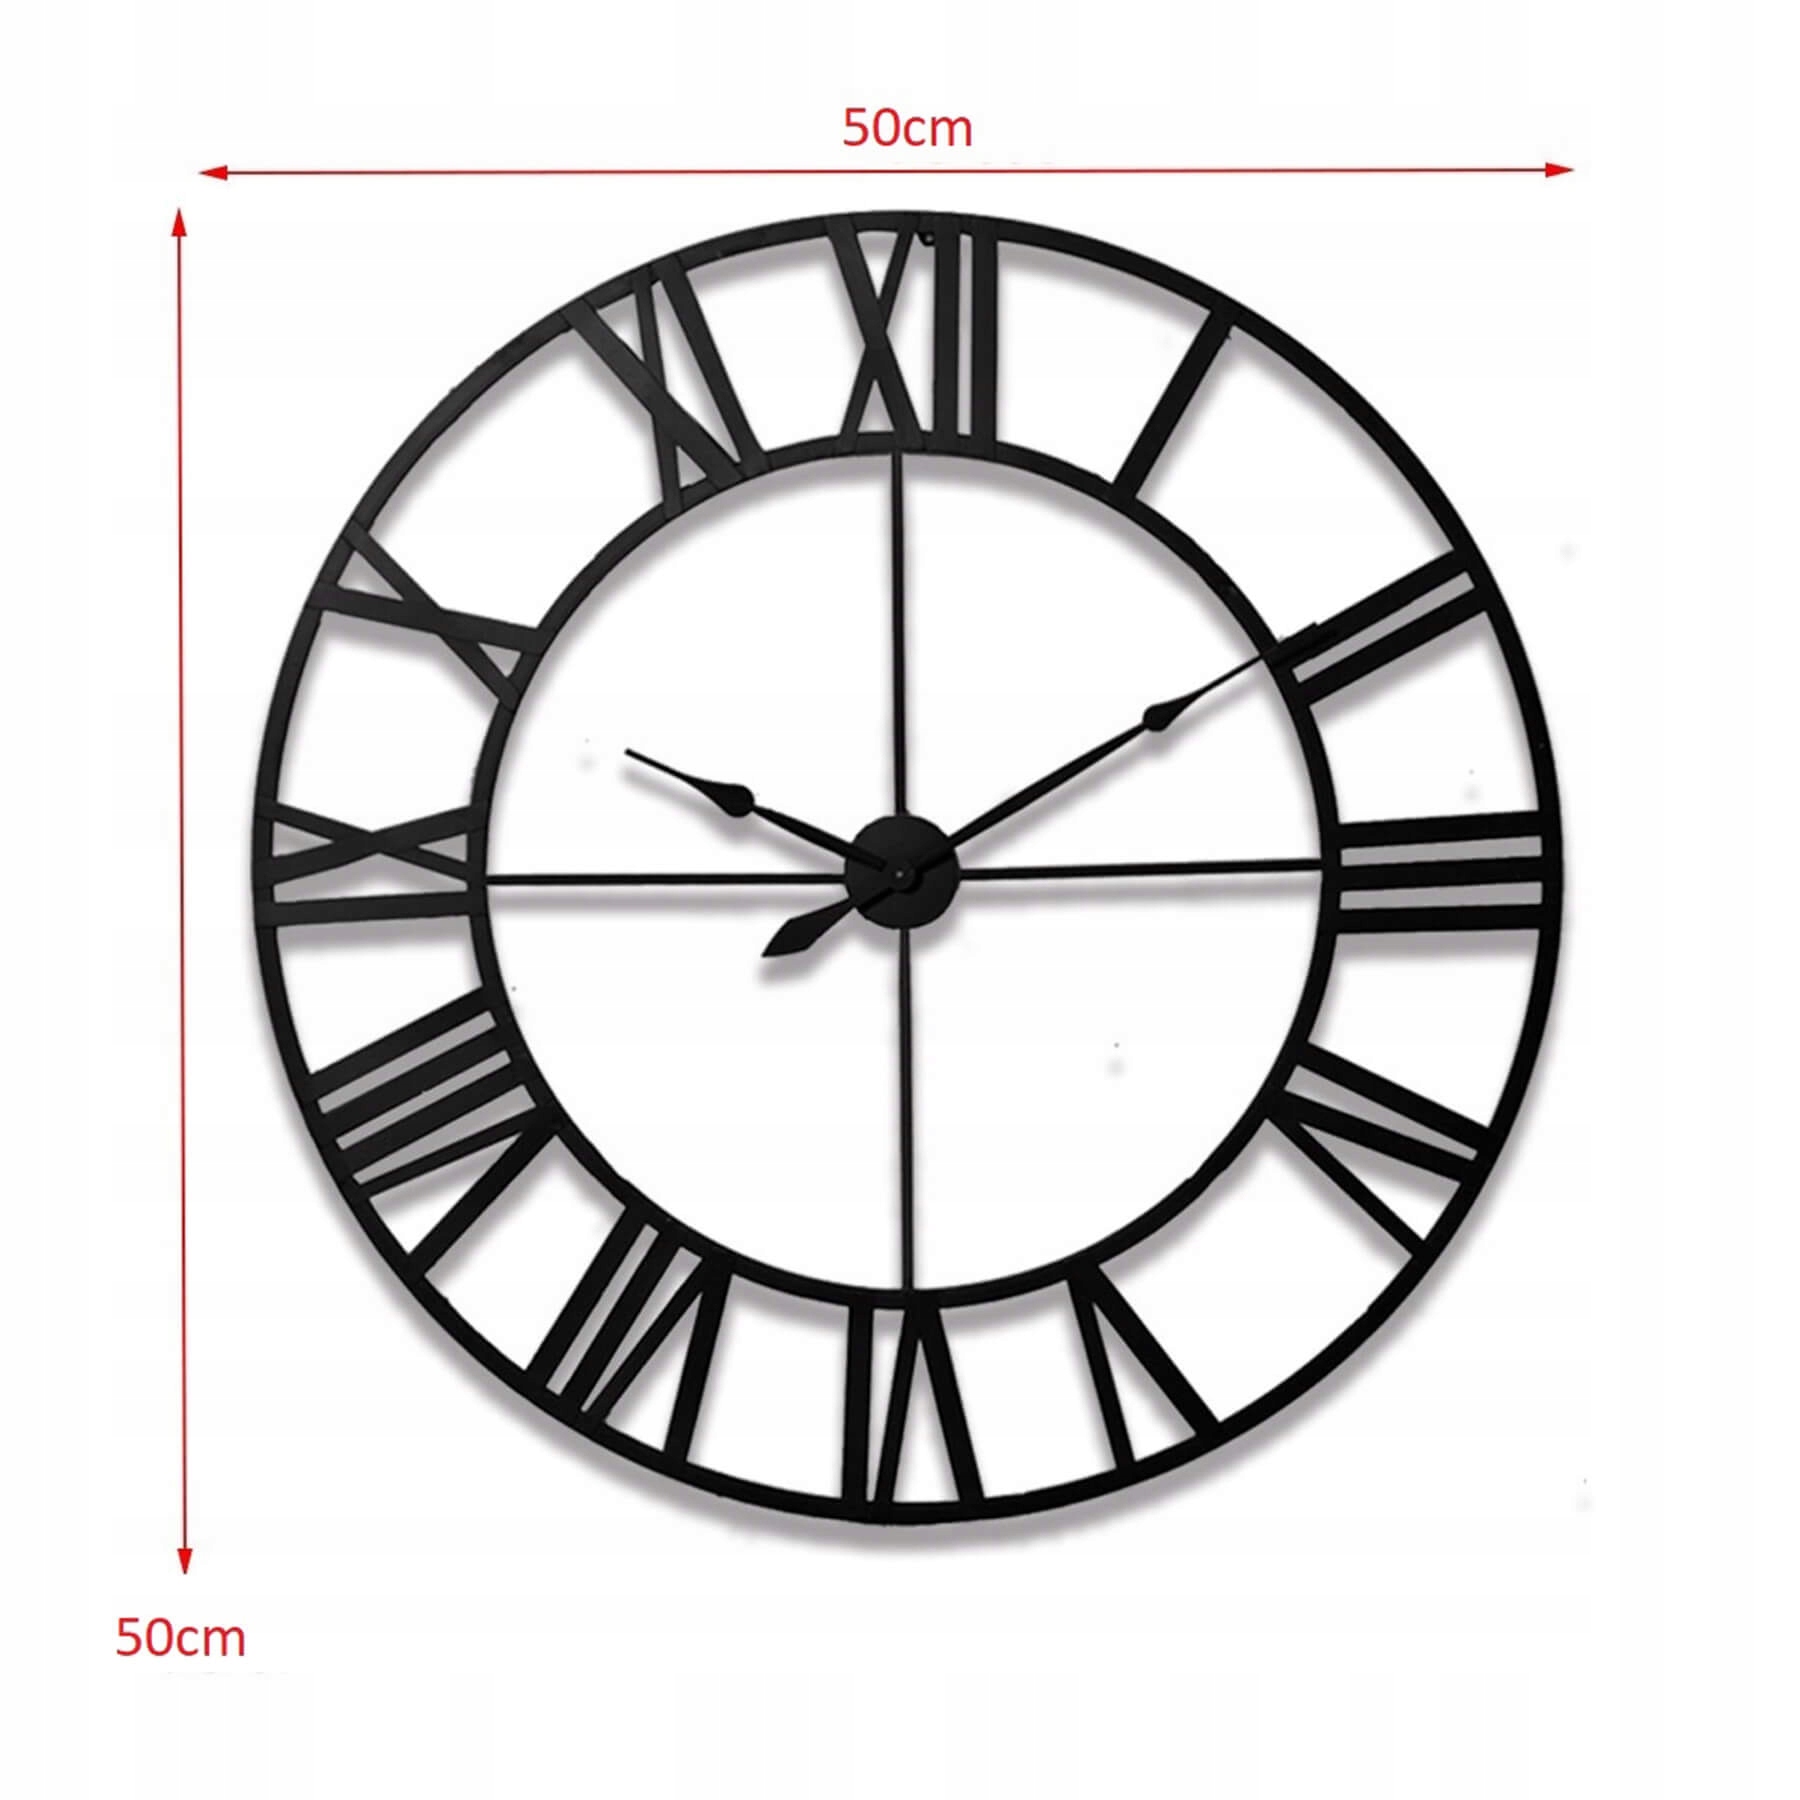 Ретро лофт римские настенные часы 3D винтаж 50 см диаметр 50 см